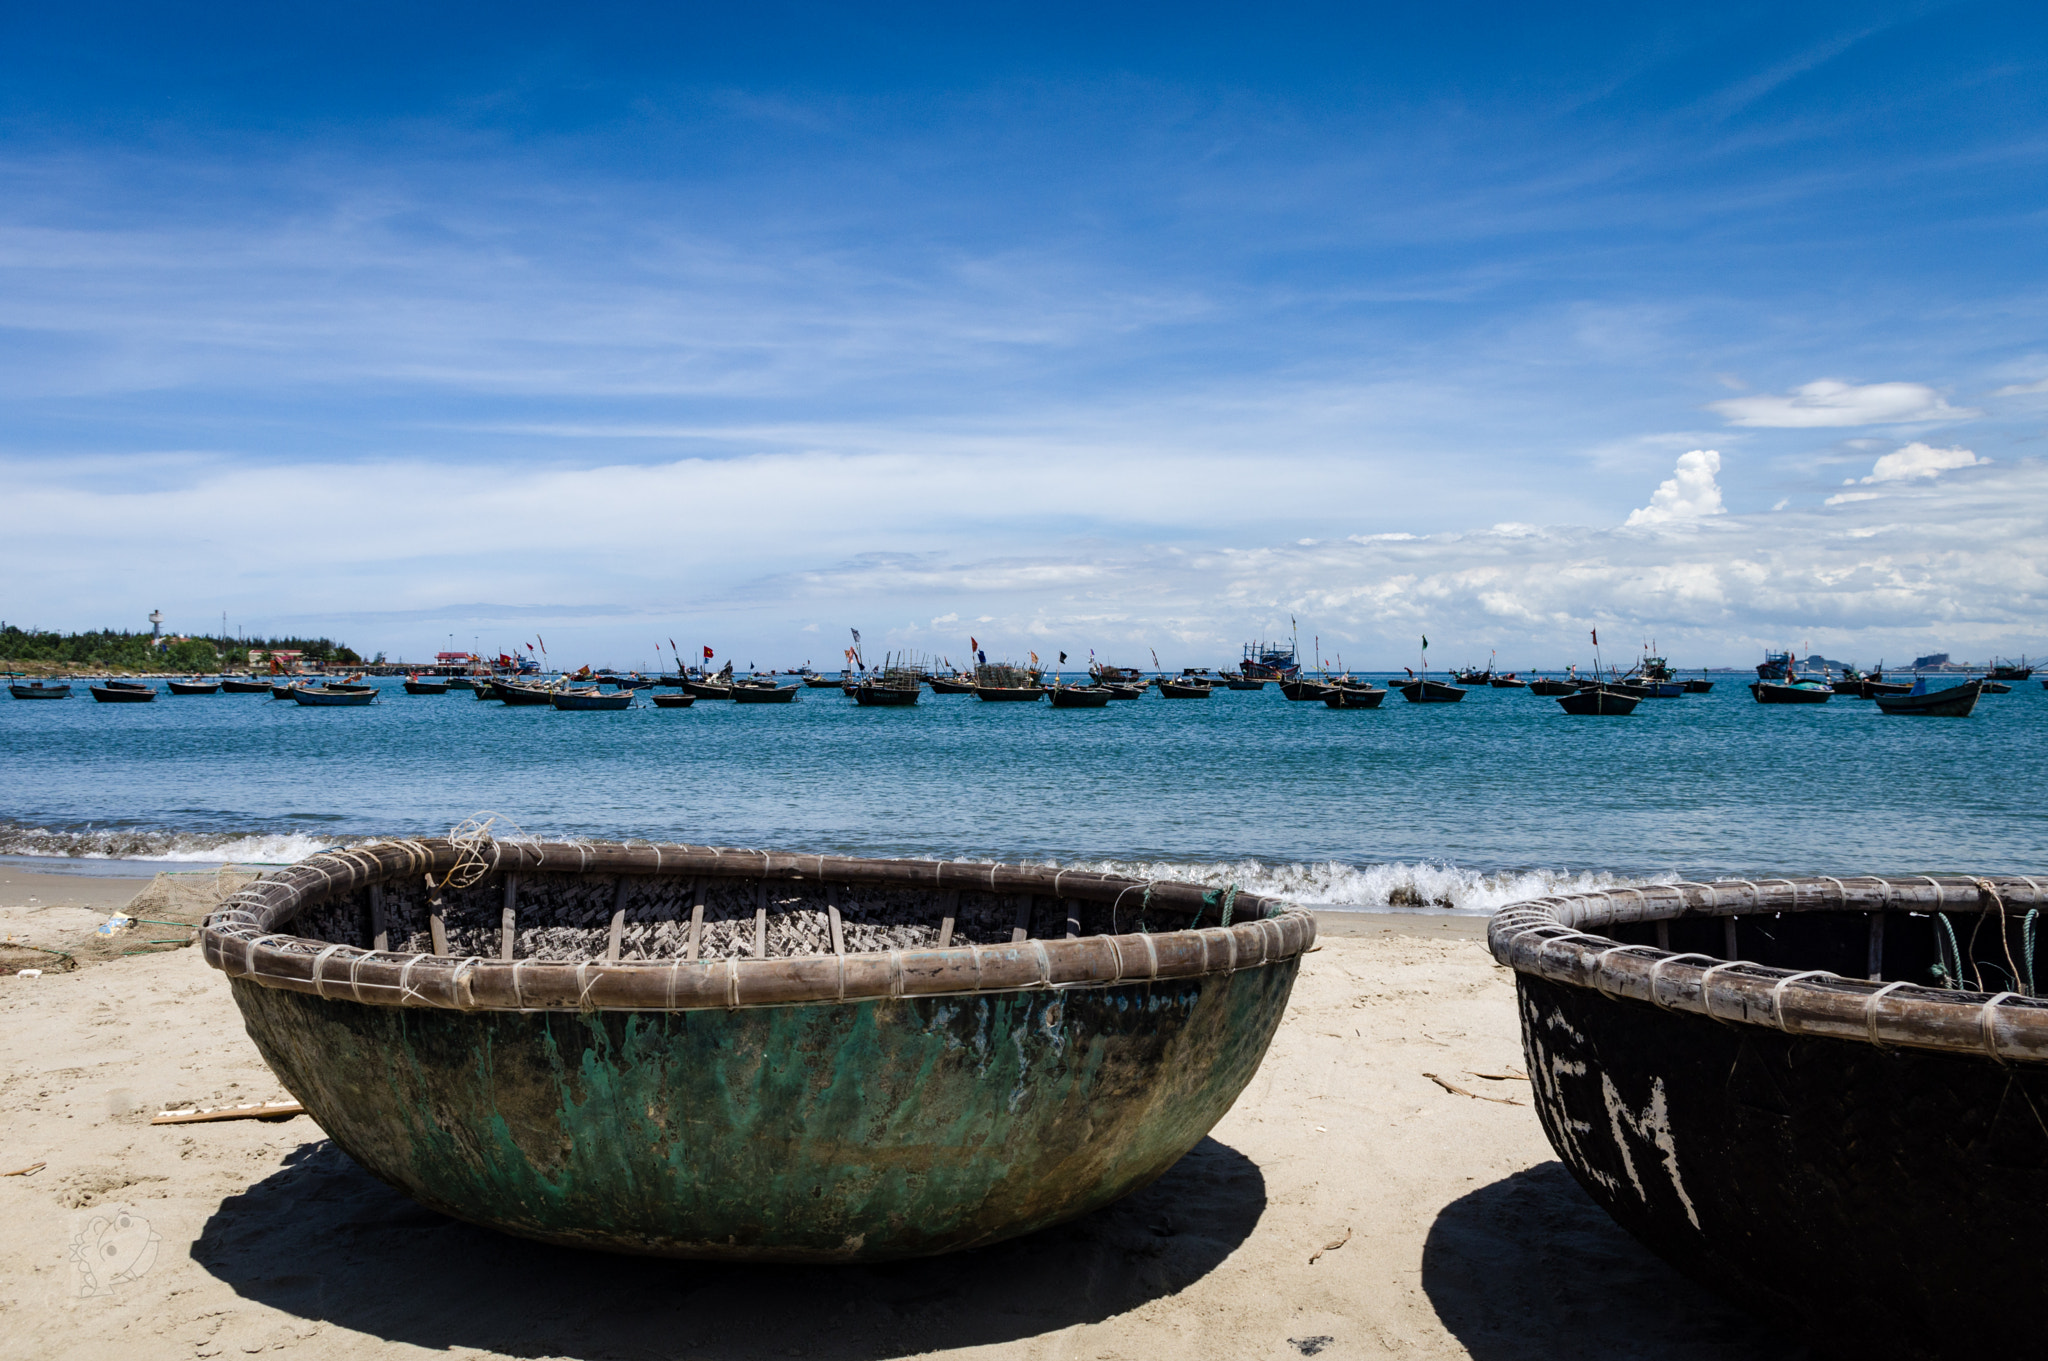 Pentax K-3 sample photo. Bateaux de pêche traditionnels vietnamiens sur la mer de chine photography